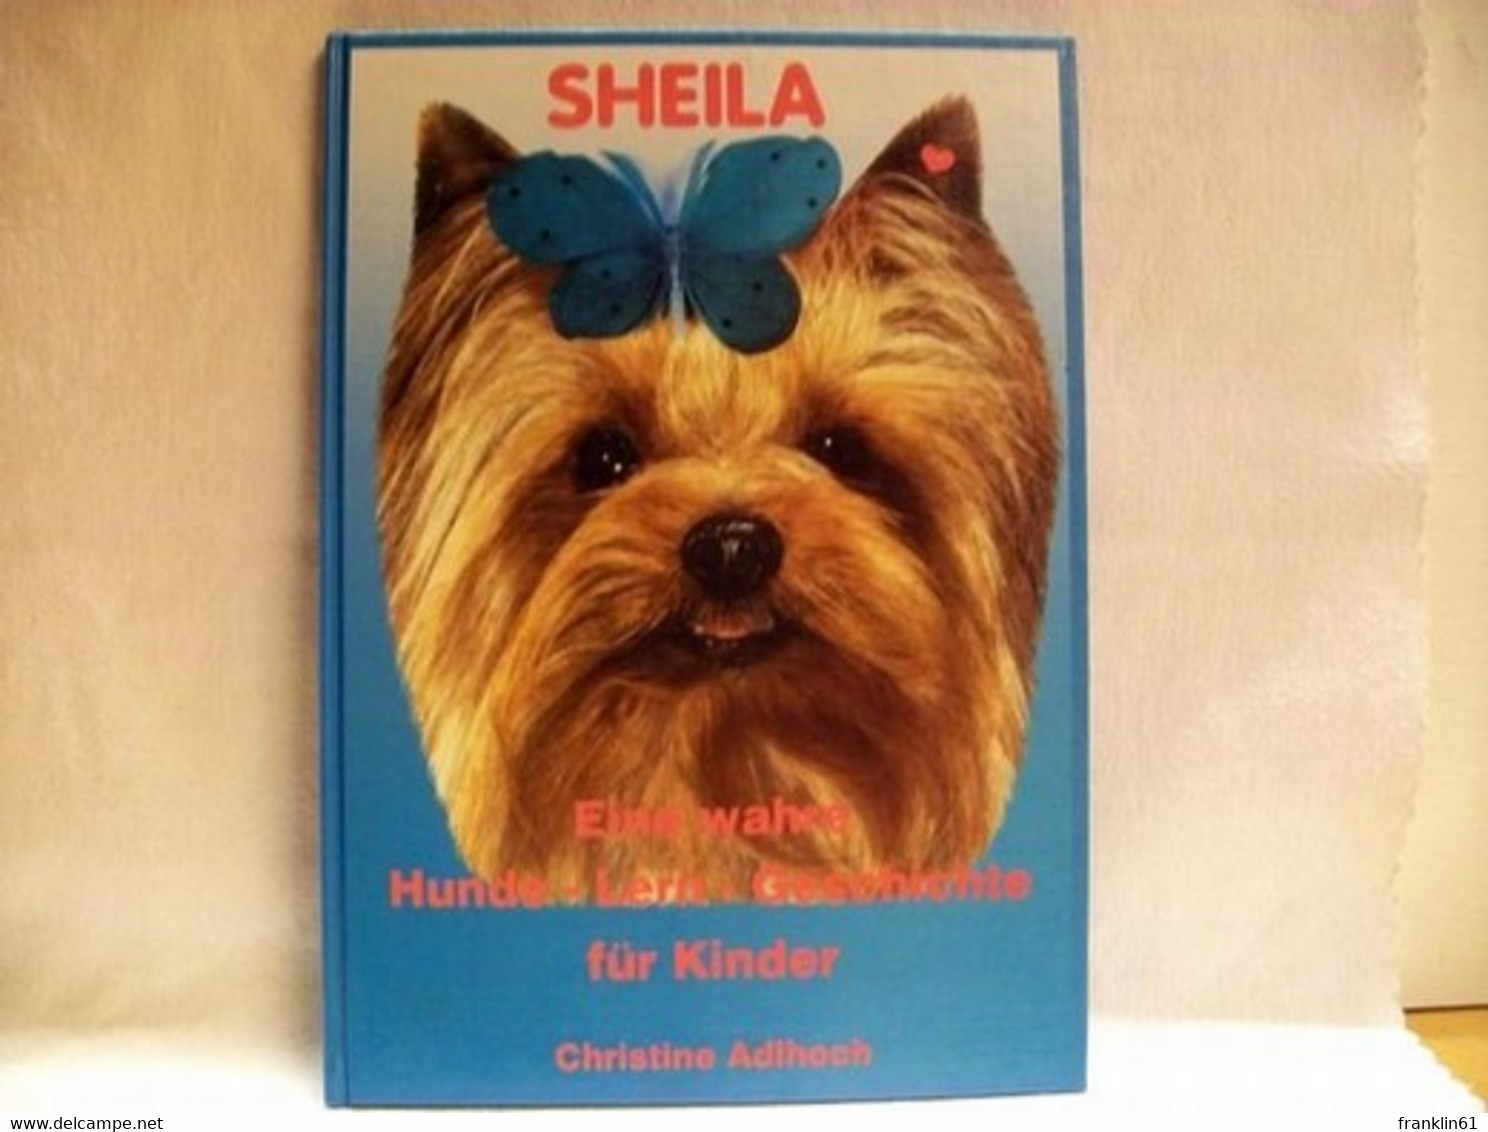 Sheila : Eine Wahre Hunde-Lern-Geschichte Für Kinder - Tierwelt